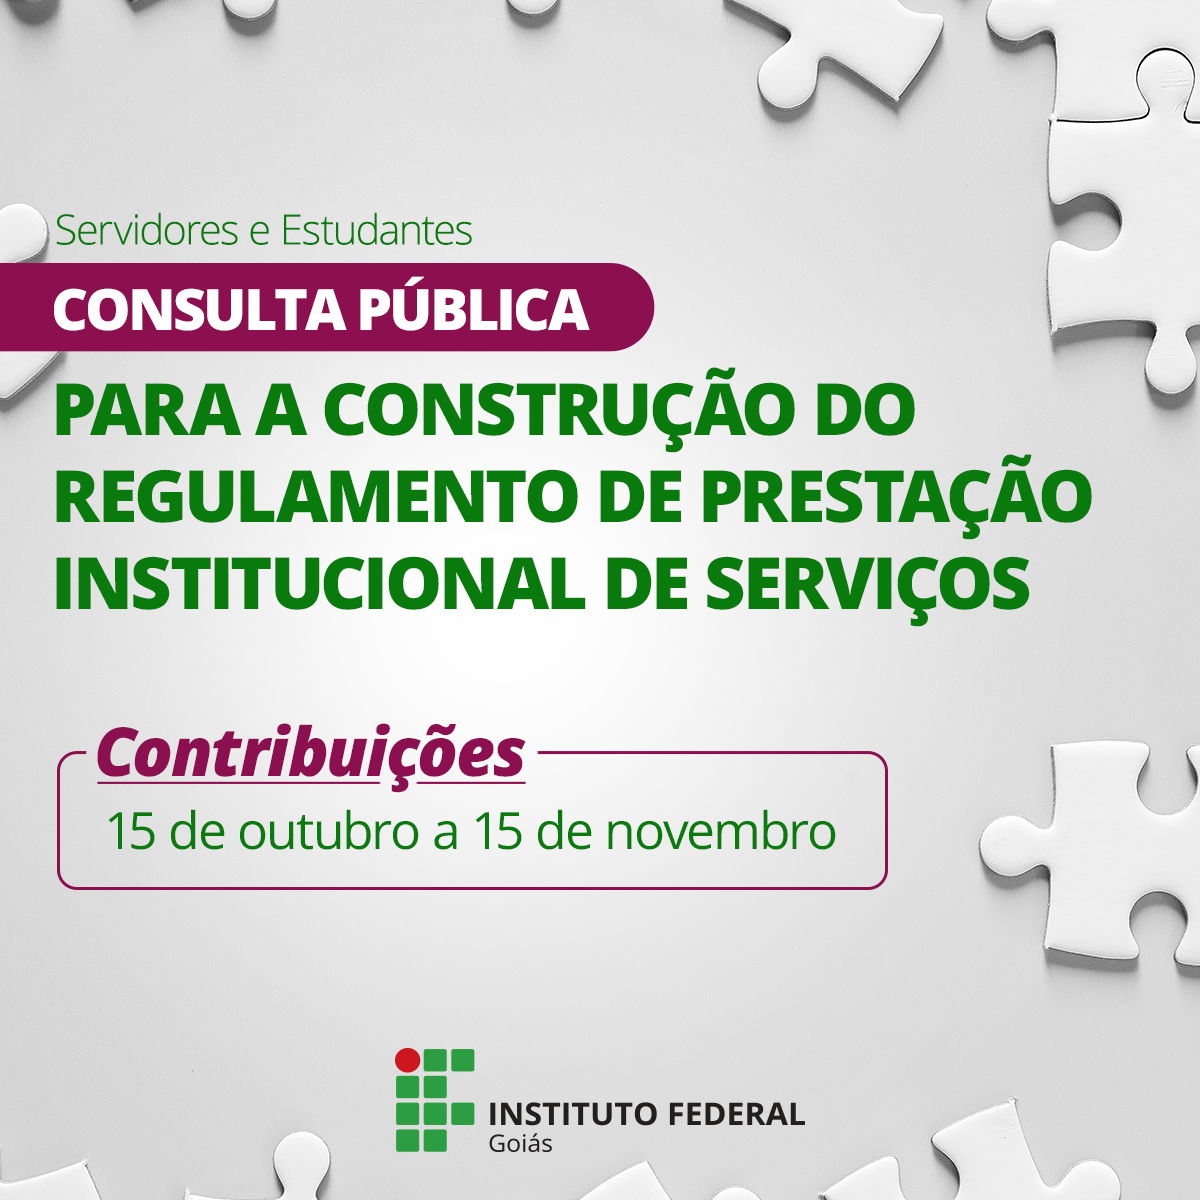 Consulta pública aberta de 15 de outubro a 15 de novembro